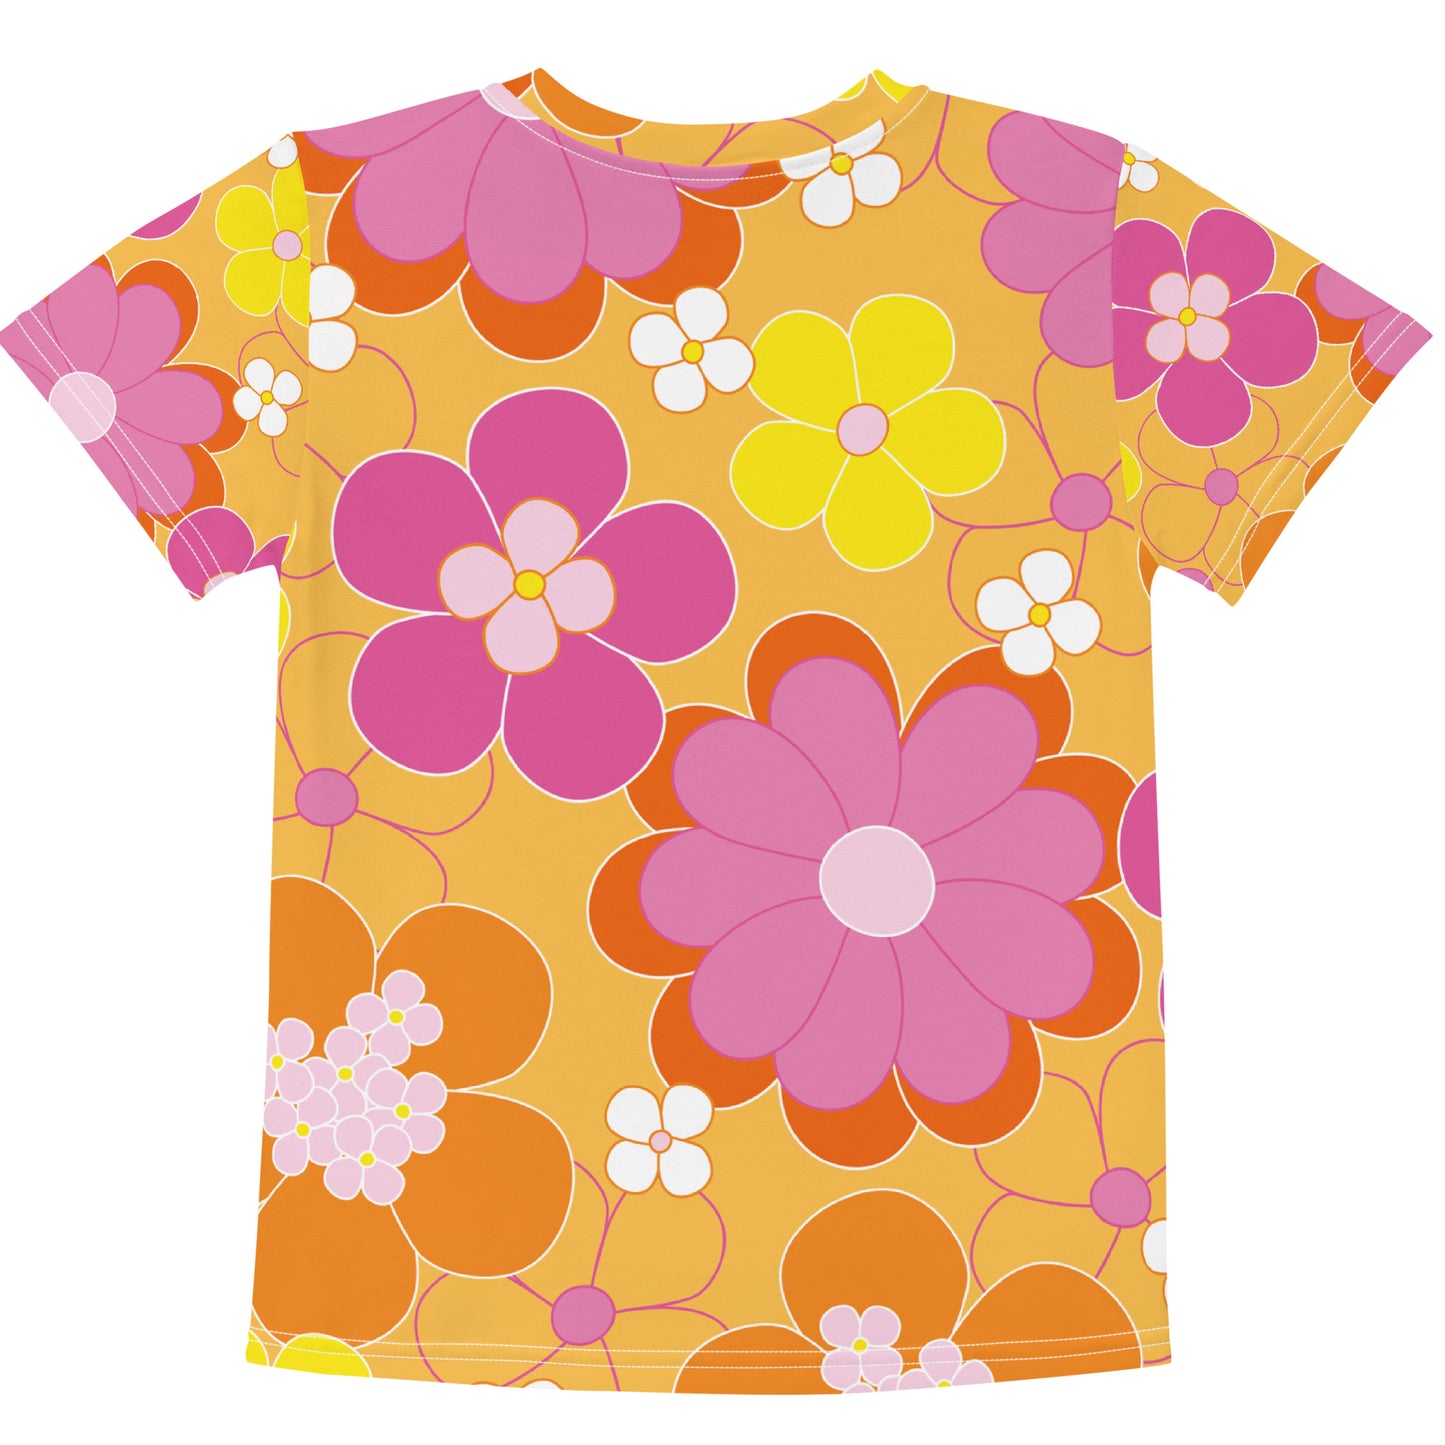 "Flower" patterned children's t-shirt